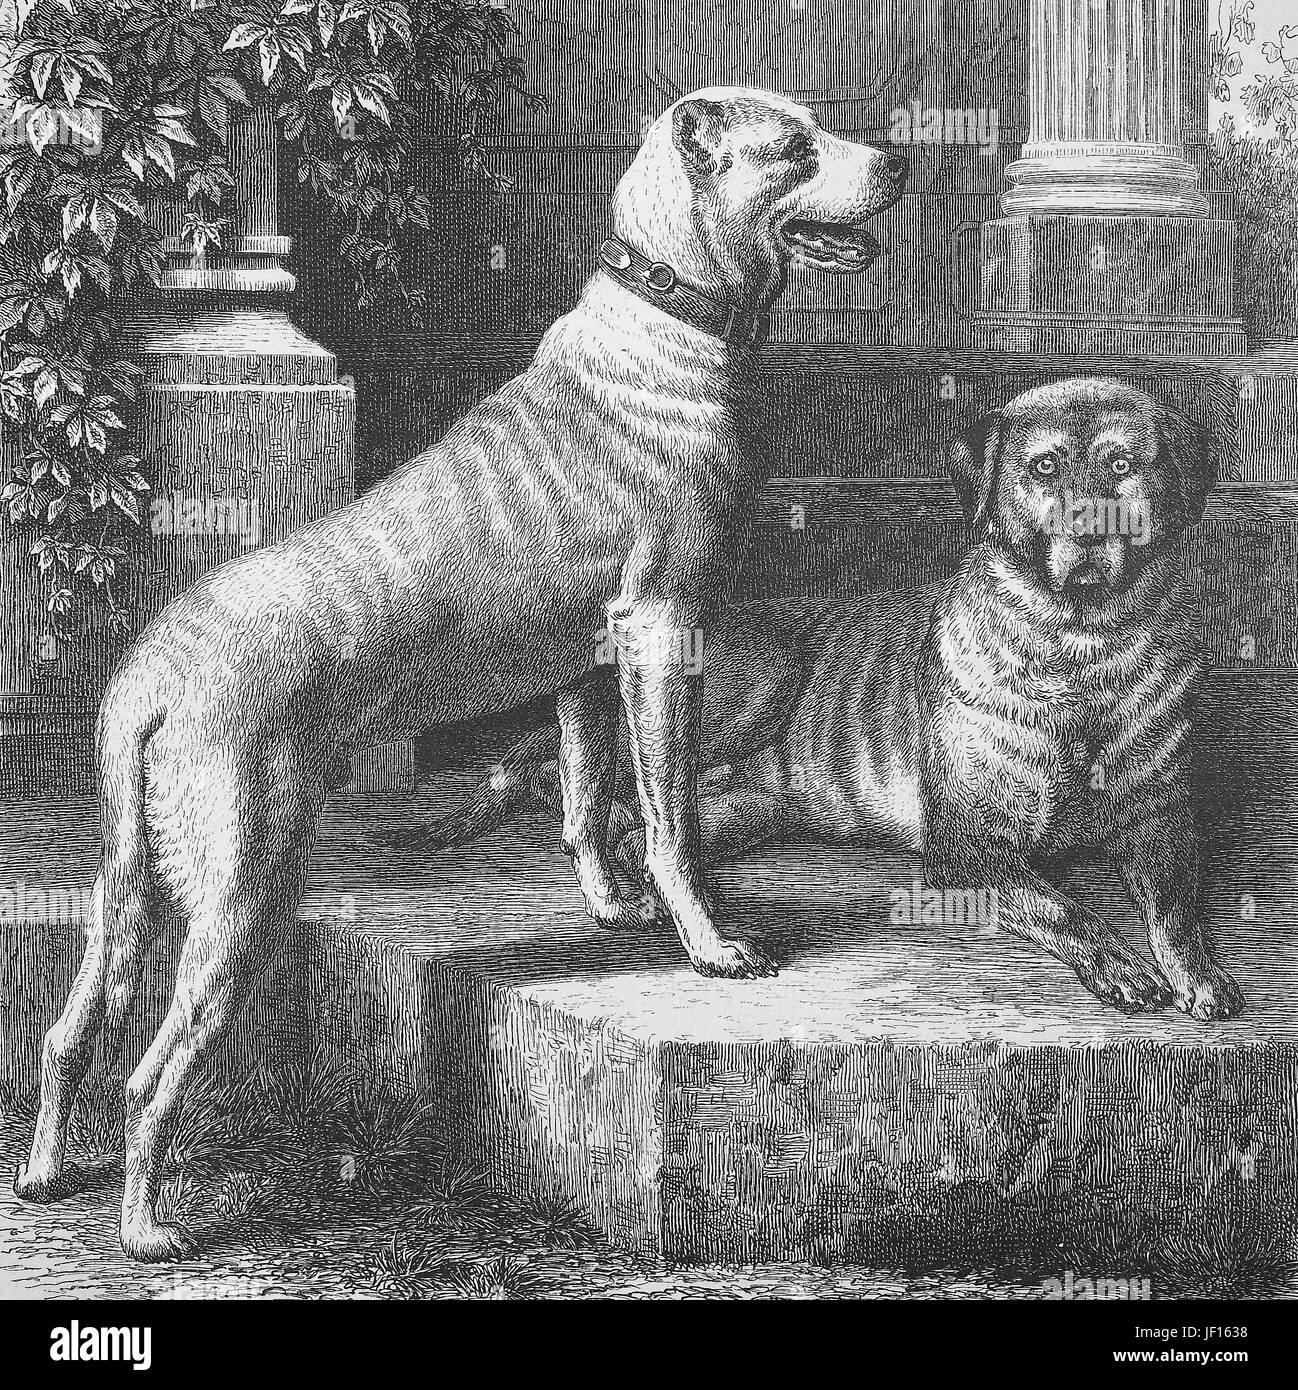 Historische Darstellung der Dogge, eine große deutsche Hunderasse Haushund, Deutsche Dogge, Deutsche Dogge, man hat angedockt oder Cropoed Ohren, Doggy Style, Zuschneiden, digitale verbesserte Wiedergabe von einem Original Drucken von 1888 Stockfoto